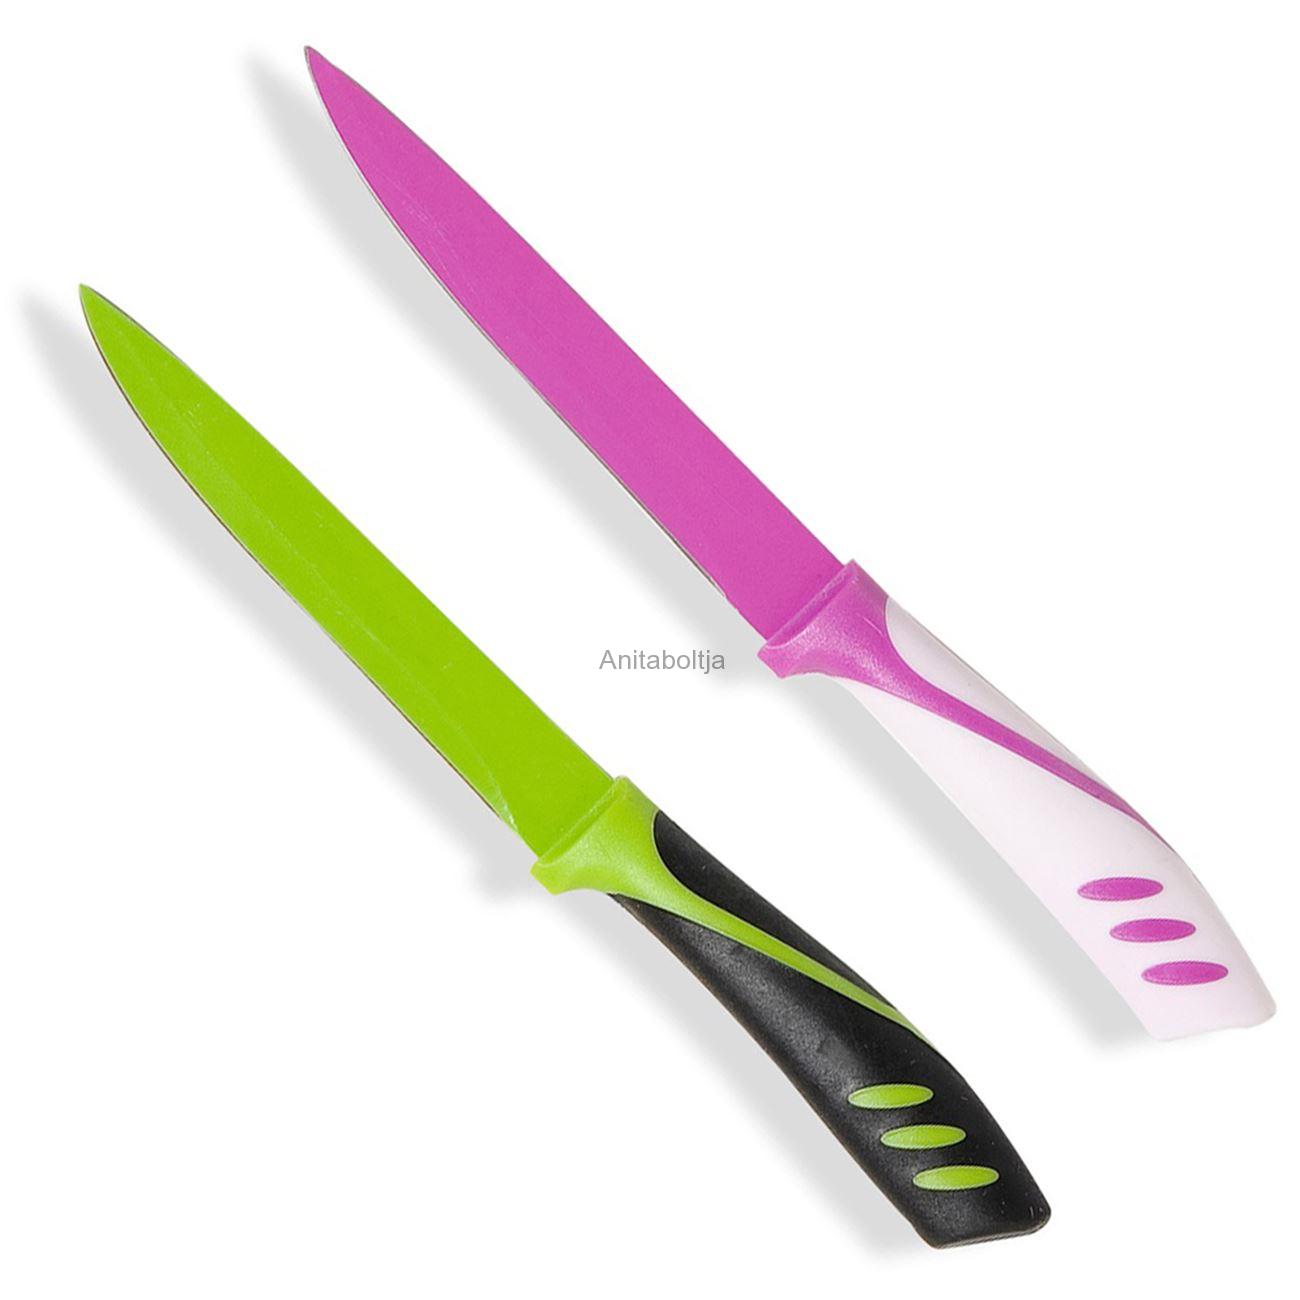 Kés szett lila / zöld 4 db